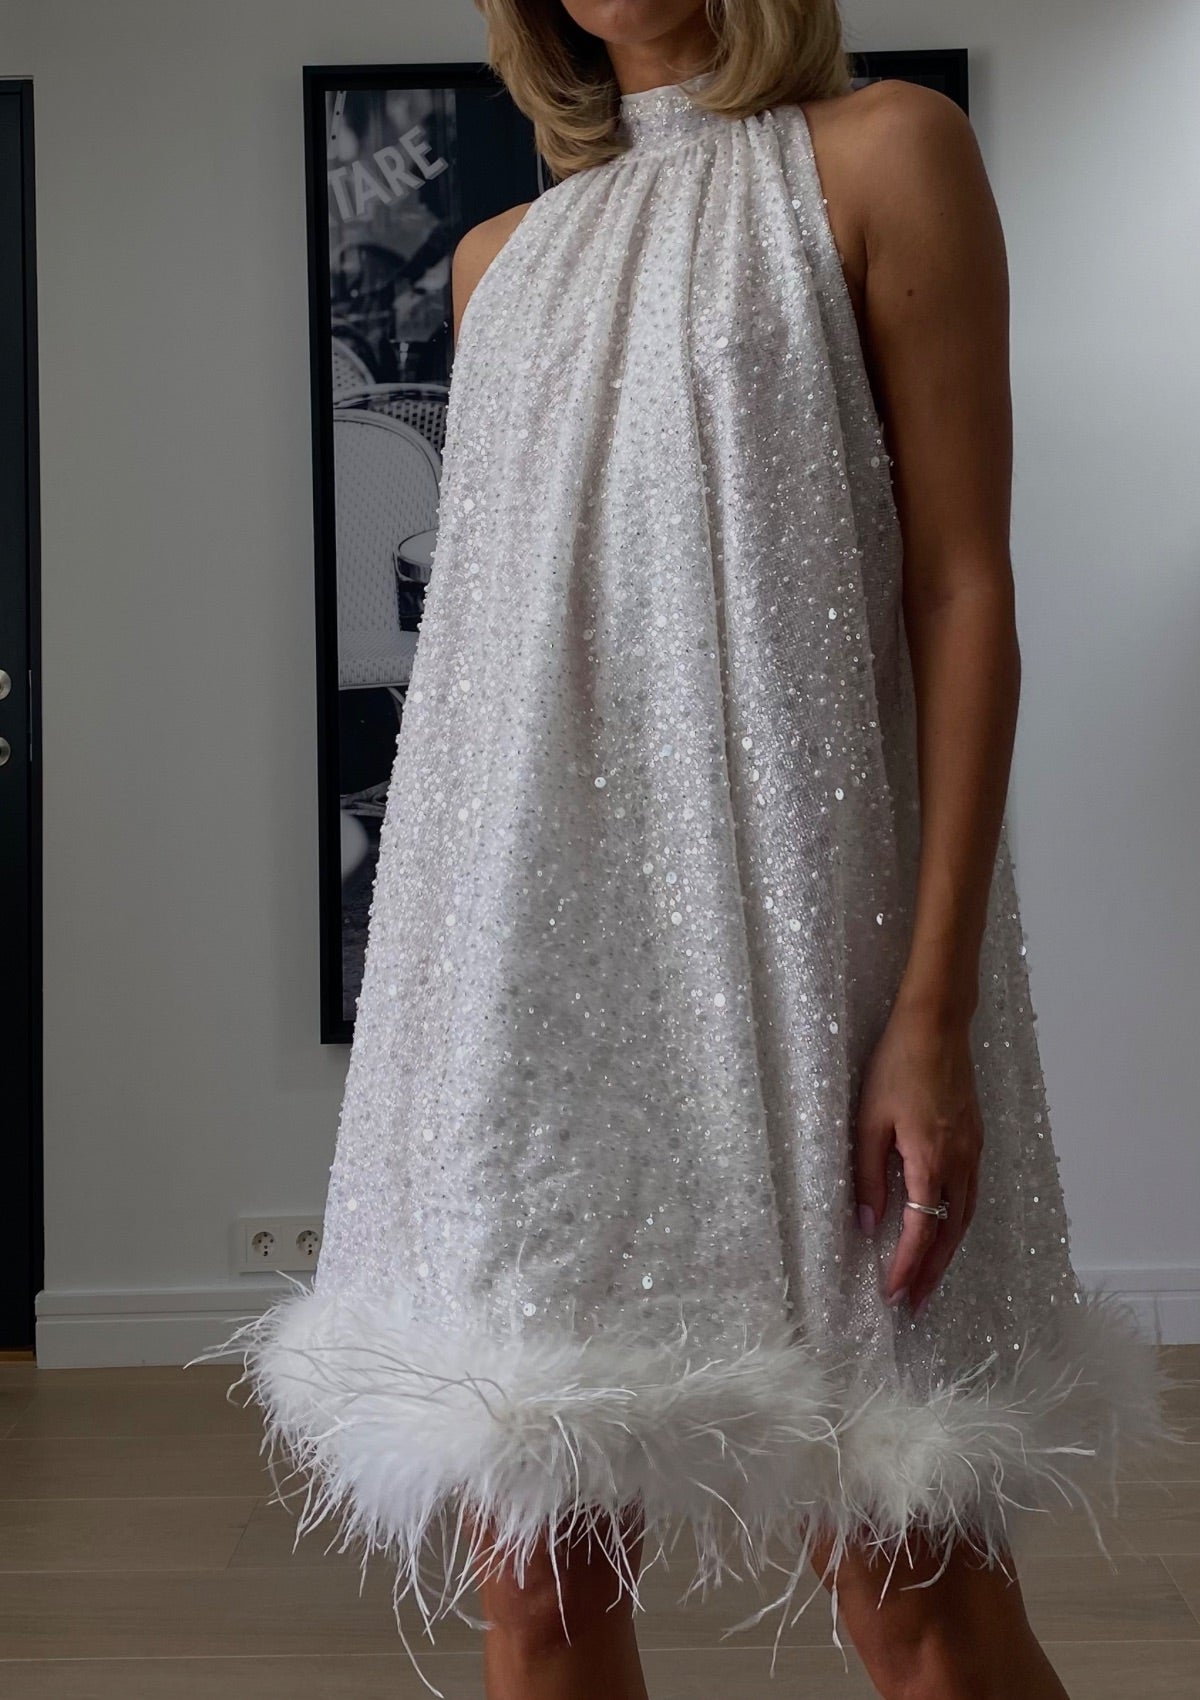 Helene Sequin Dress. White